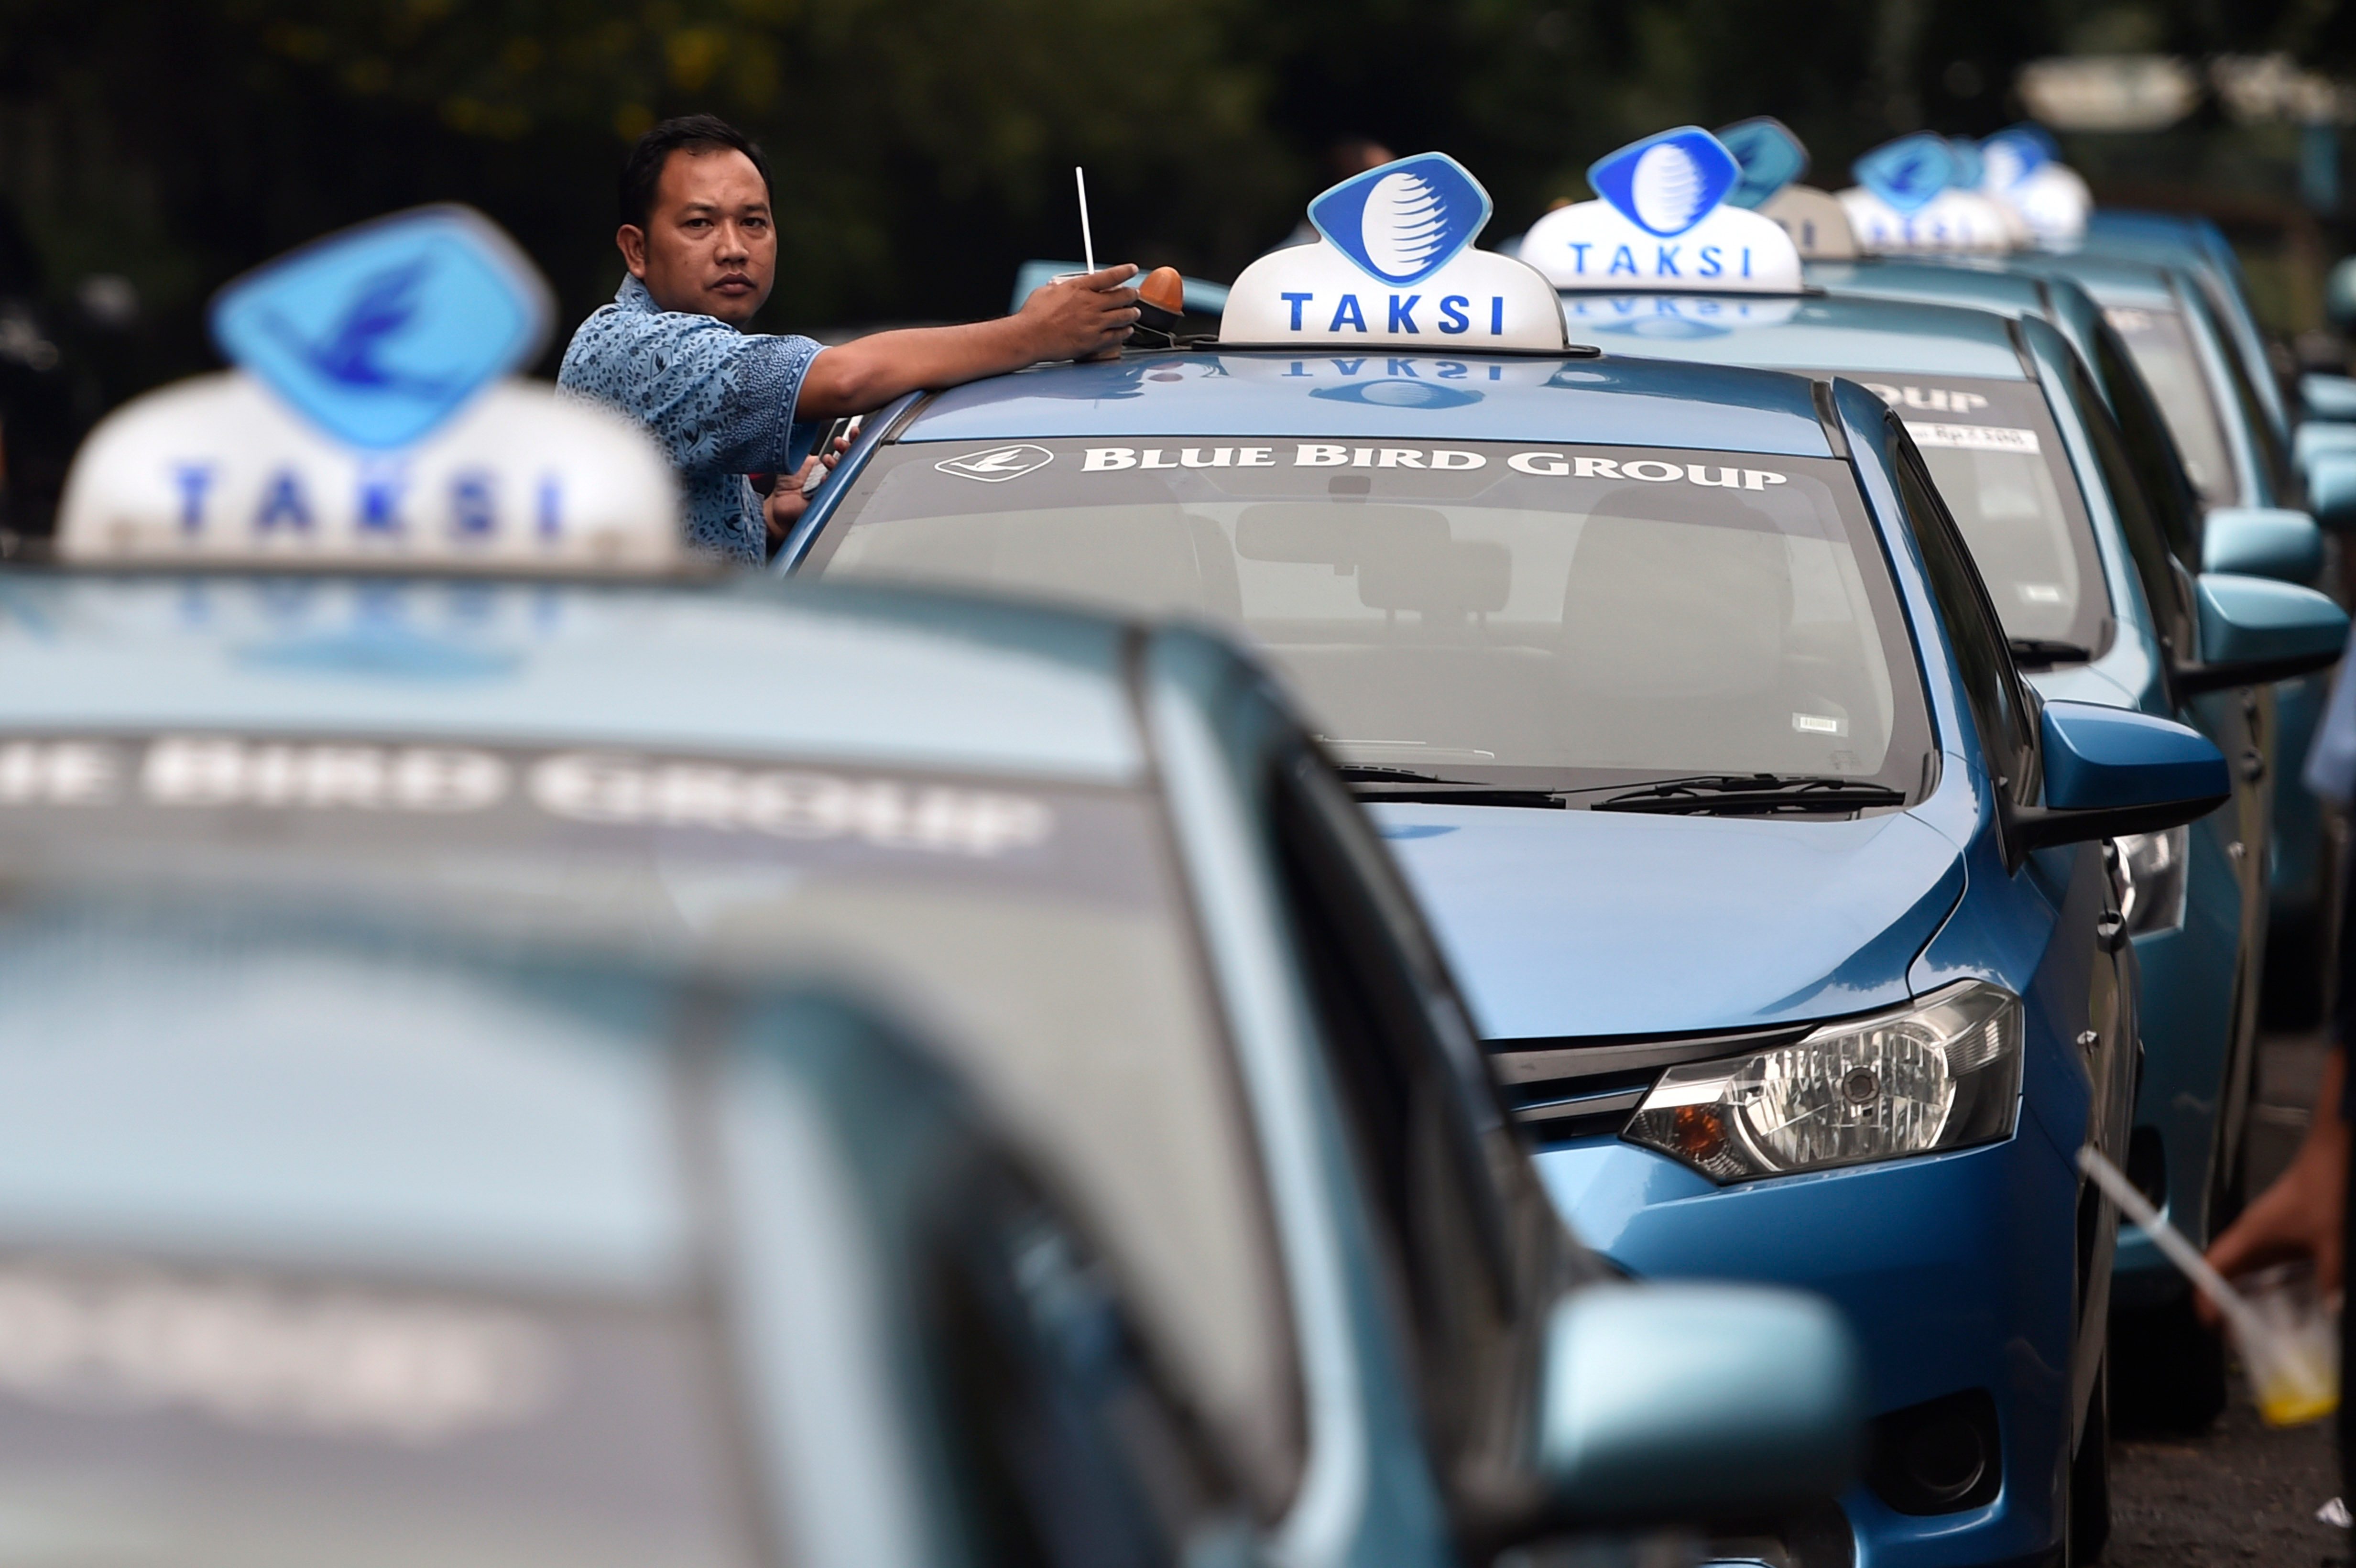 TAKSI GRATIS. Perusahaan taksi Blue Bird Group memberikan layanan gratis selama 24 jam pada Rabu, 23 Maret. Foto oleh Puspa Perwitasari/ANTARA 